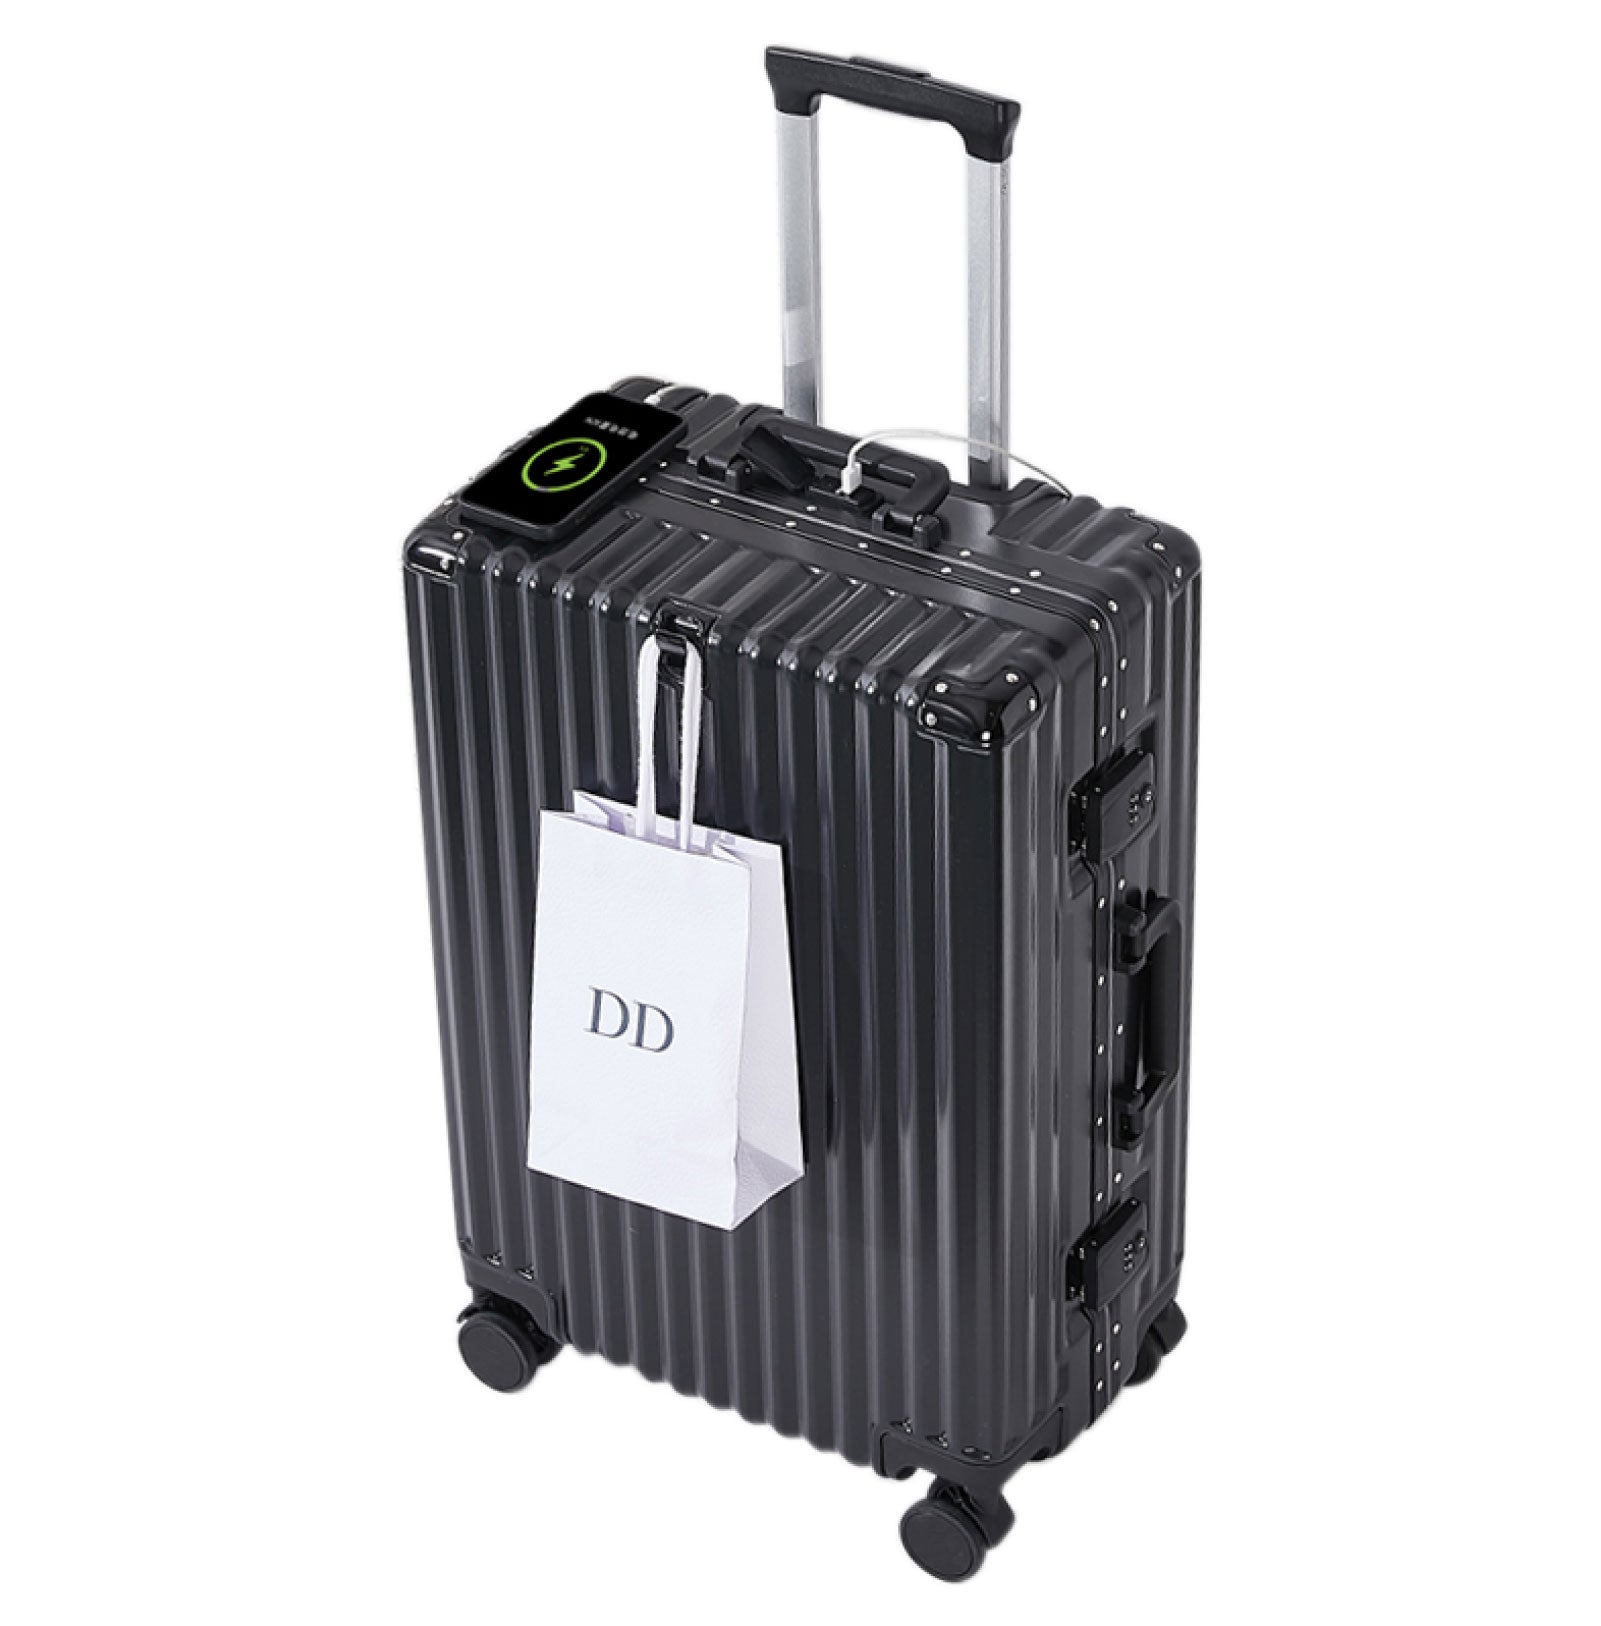 スーツケース フレームタイプ USBポート付き キャリーケース Mサイズ 66L 5カラー選ぶ 4-7日用 泊まる カップホルダー付き 軽量 大容量 多収納ポケット トランク 修学旅行 海外旅行 国内旅行 sc814-24